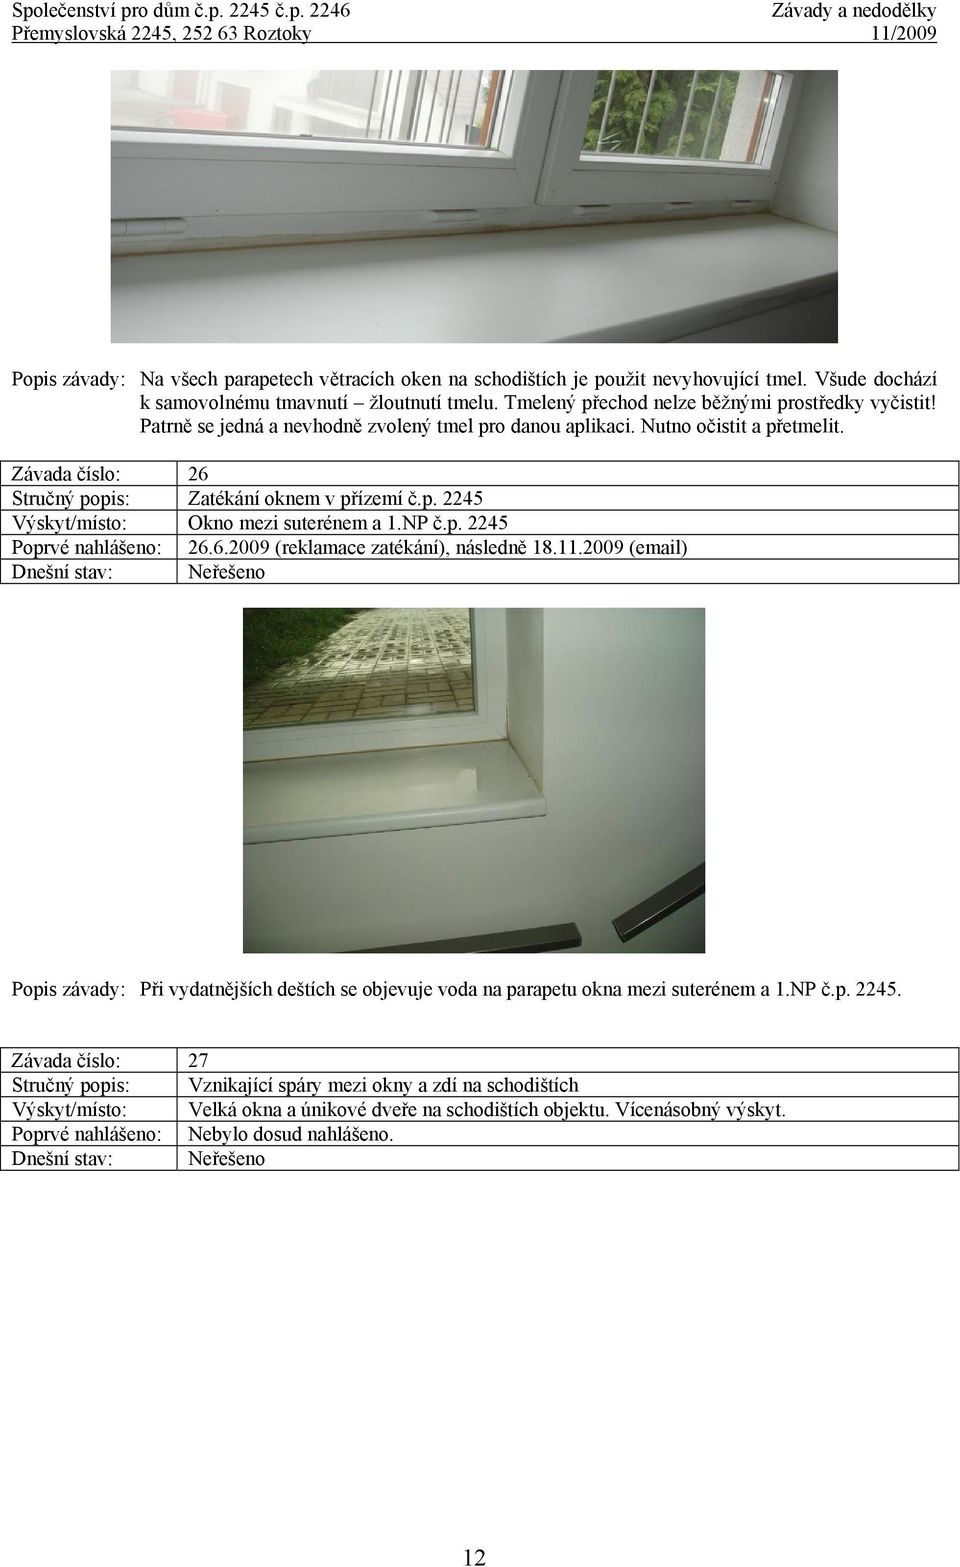 6.2009 (reklamace zatékání), následně 18.11.2009 (email) Popis závady: Při vydatnějších deštích se objevuje voda na parapetu okna mezi suterénem a 1.NP č.p. 2245.